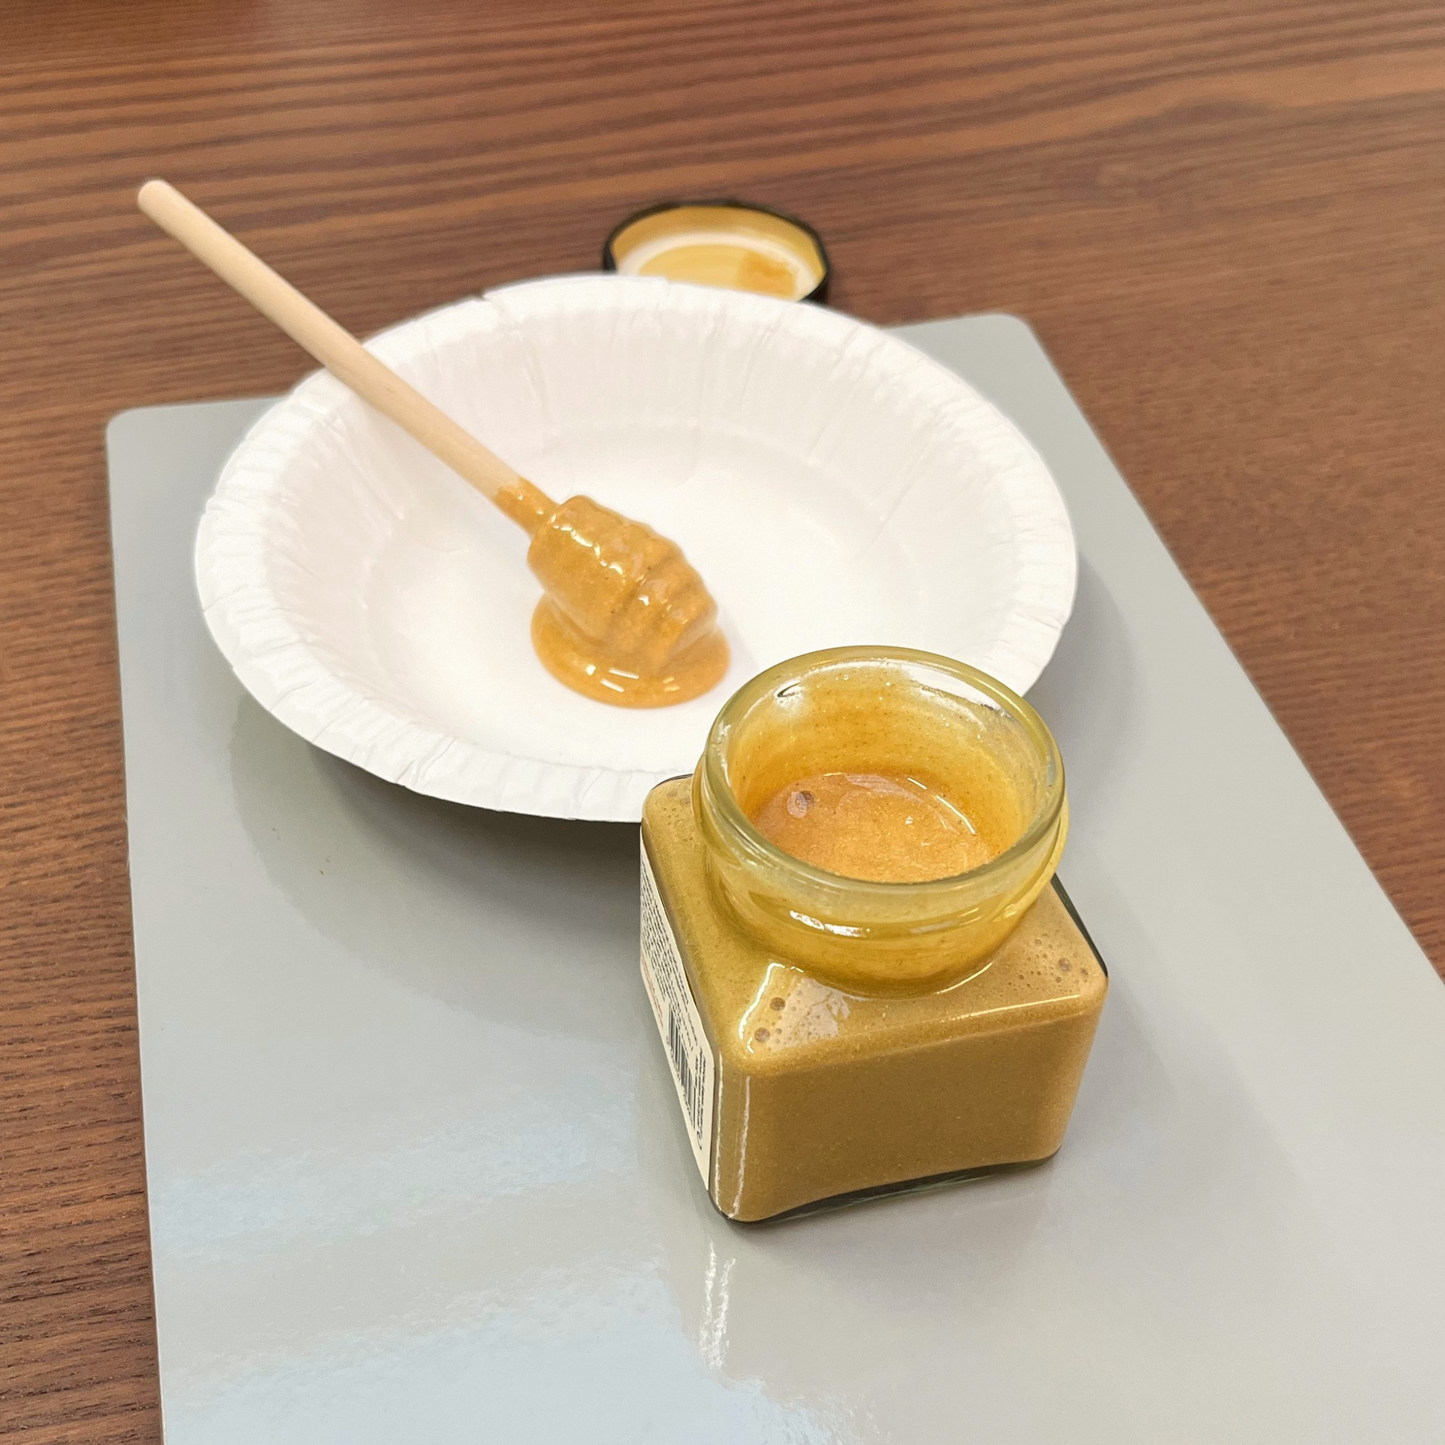 DrSheikh Medicinal Grade Honey + ASHWAGANDHA